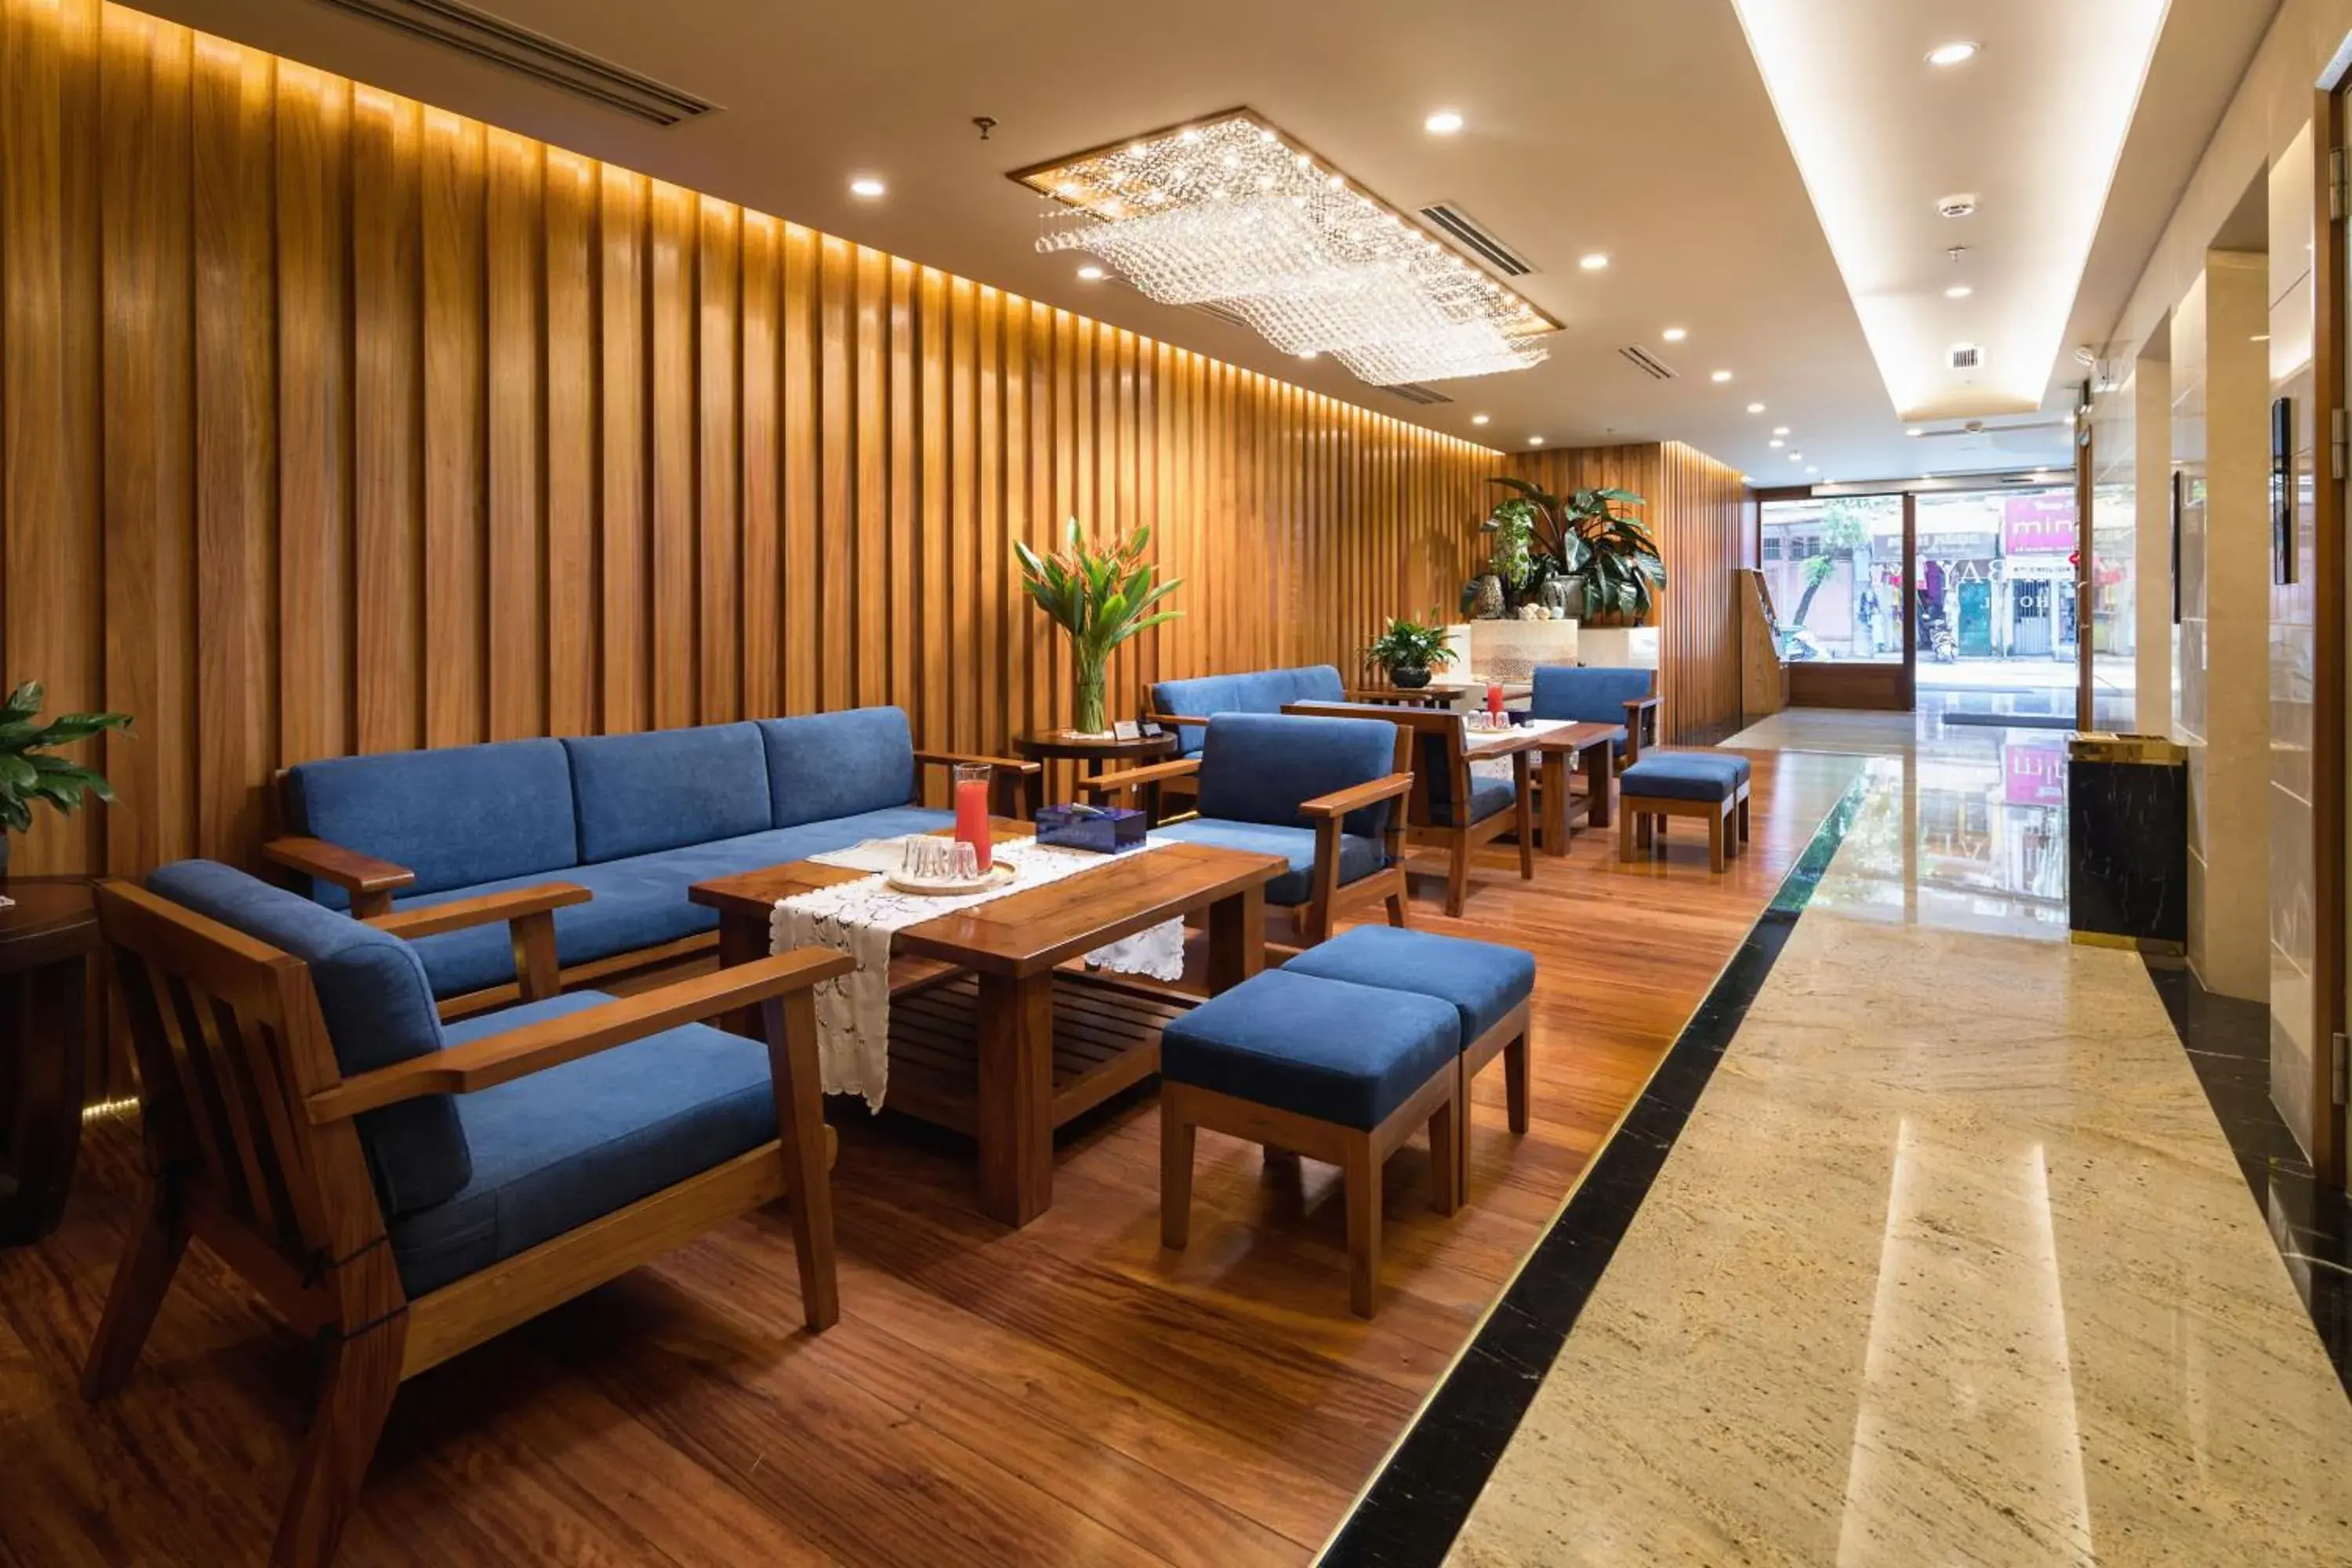 Lobby or reception in Hai Bay Hotel & Restaurant